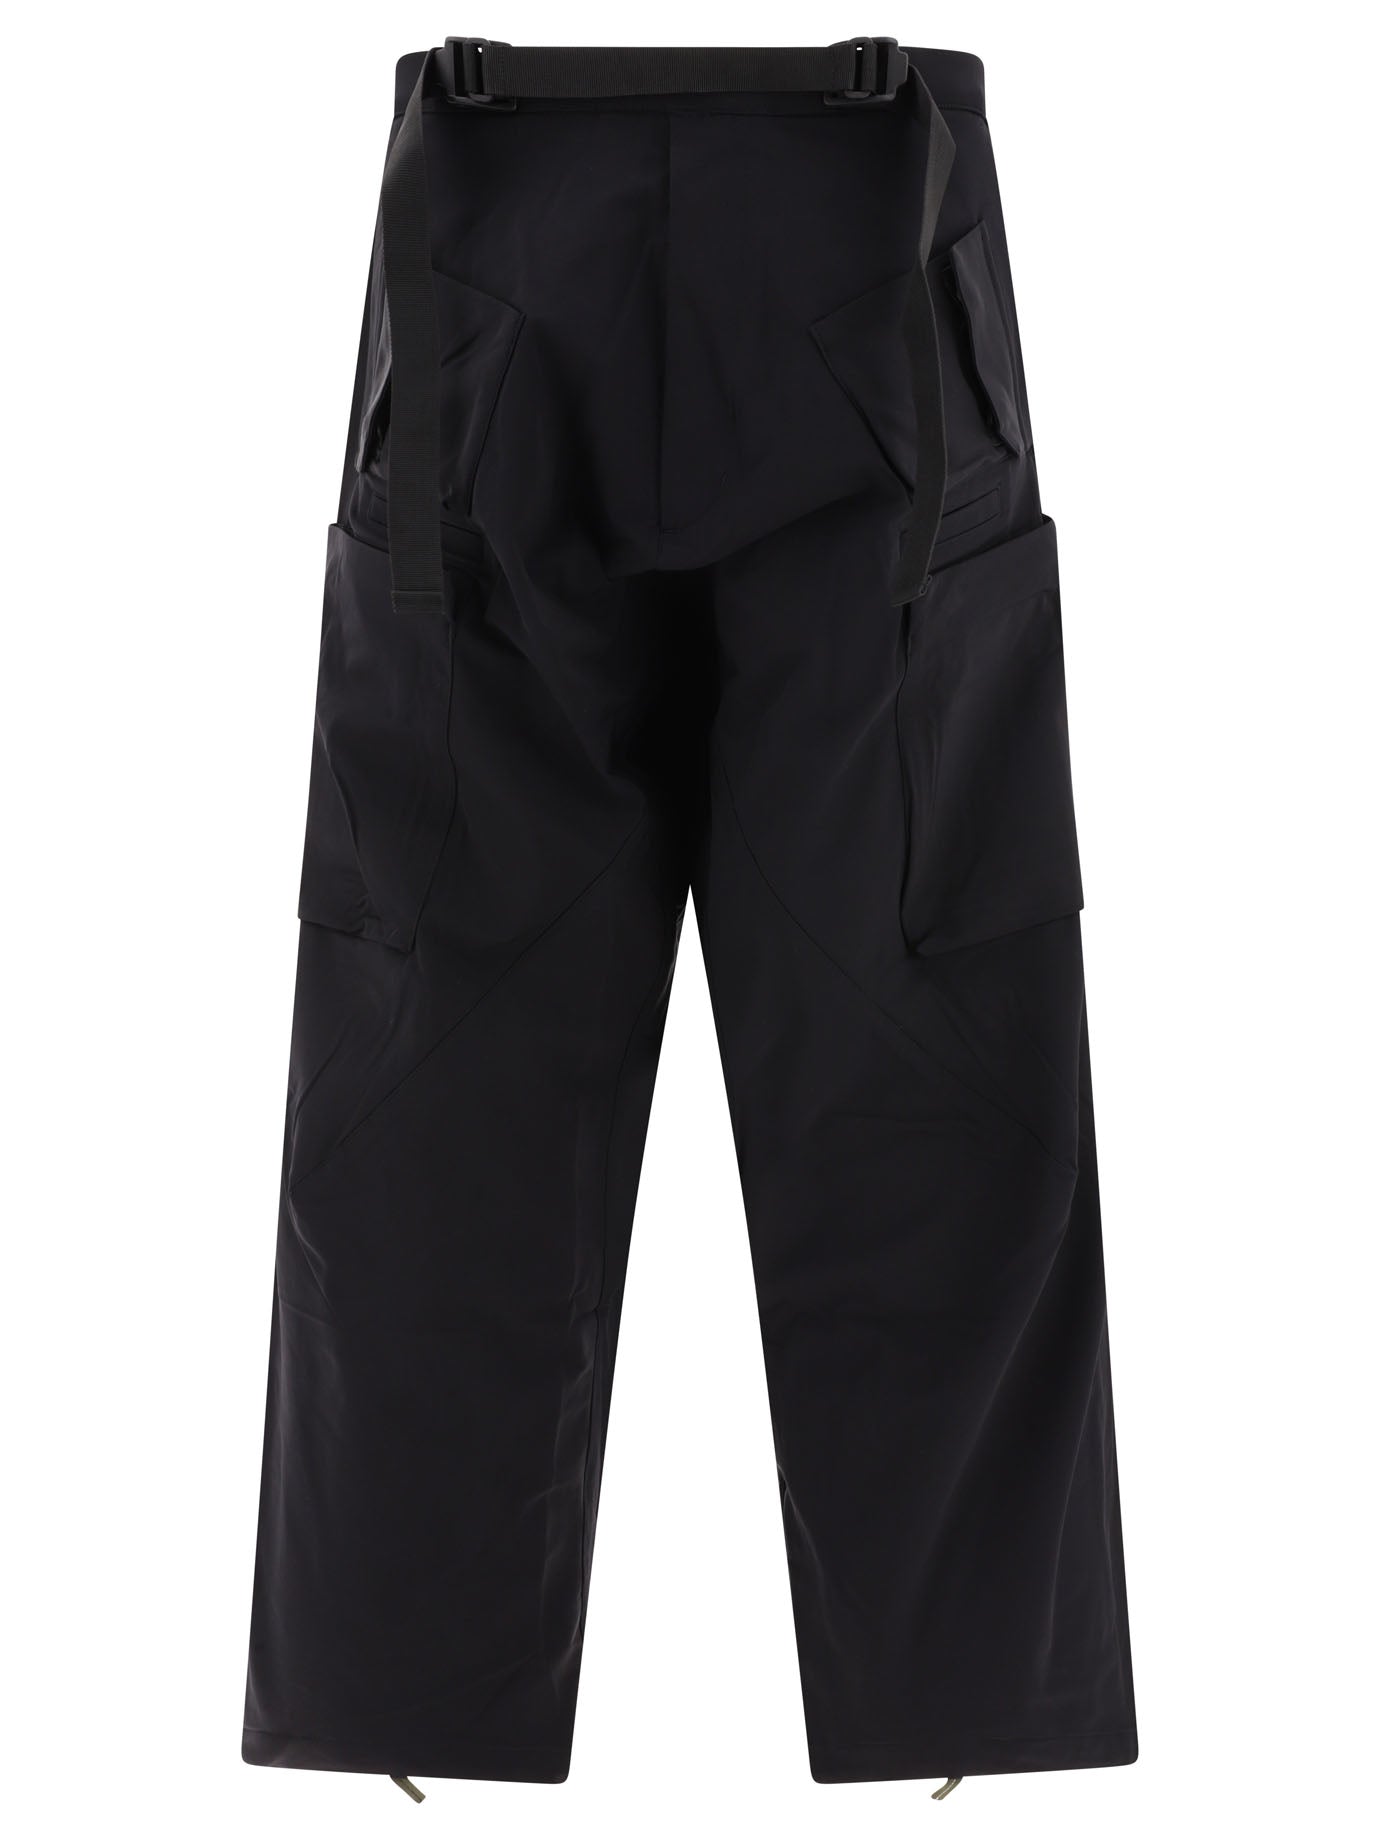 Acronym P30al-ds Trousers Black